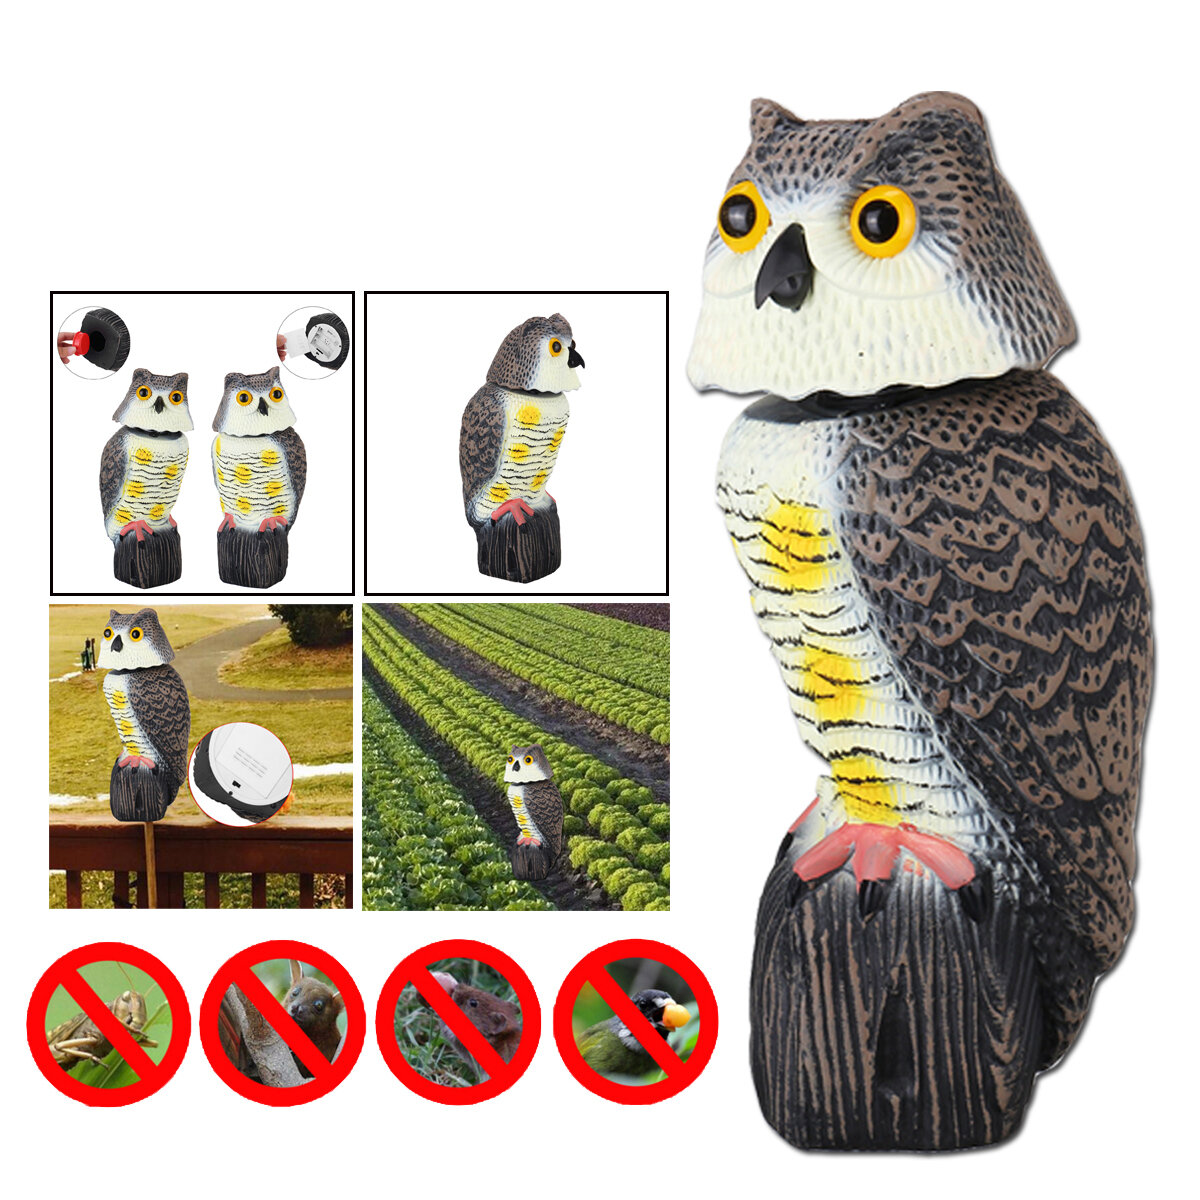 

Plastic Simulation Owl Bird Scarer Deterrent Repeller Garden Weed Pest Statue Outdoor Hunting Decoy